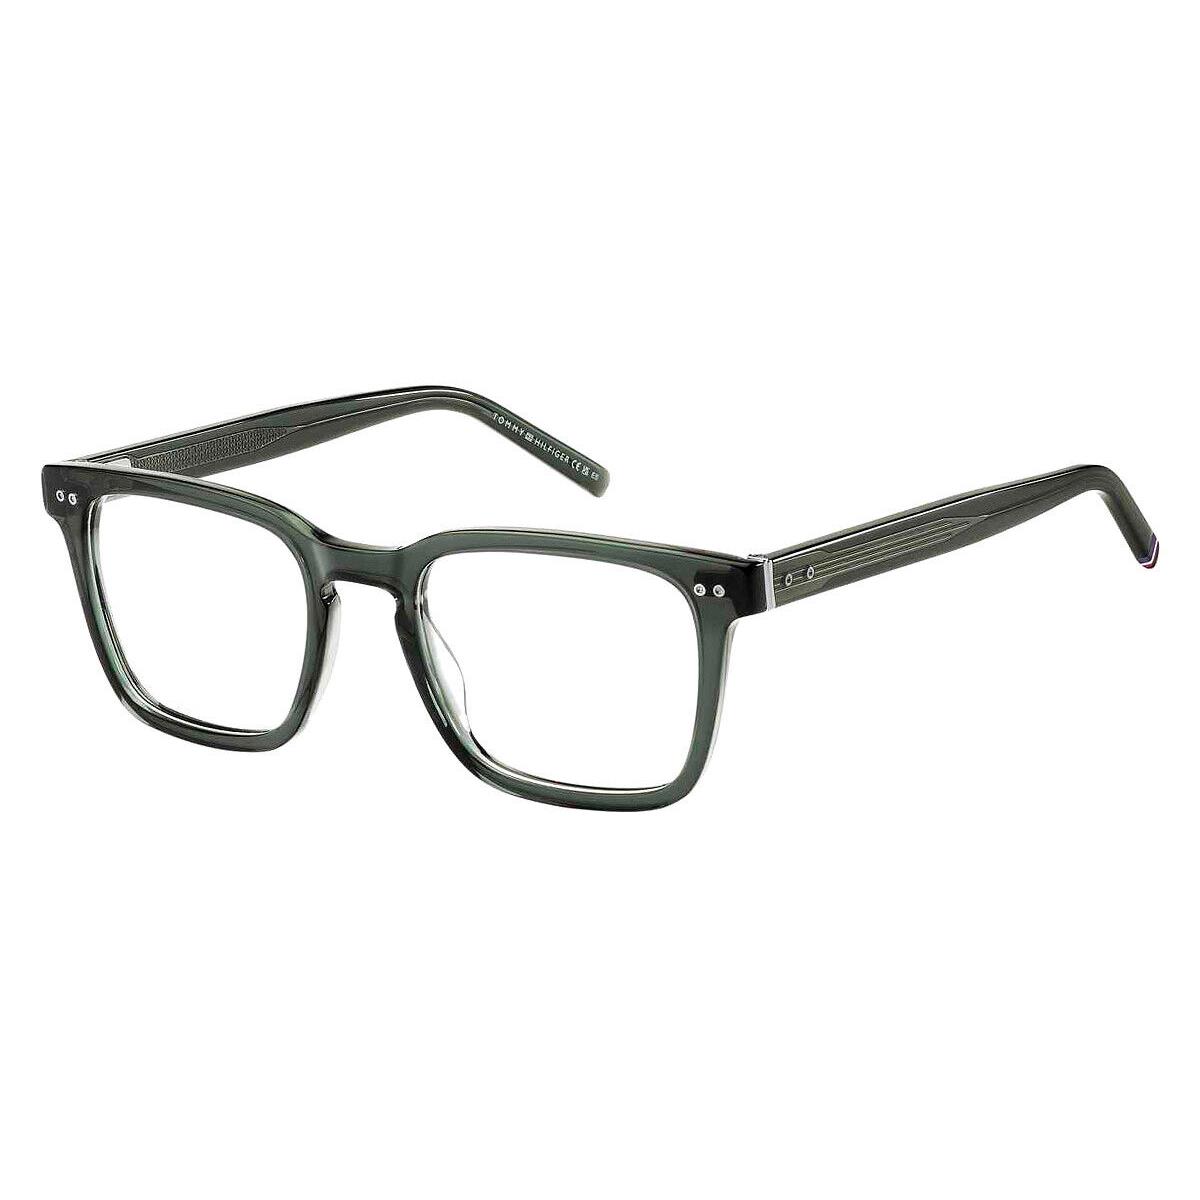 Tommy Hilfiger Thf Eyeglasses Men Green 52mm - Frame: Green, Lens: Demo